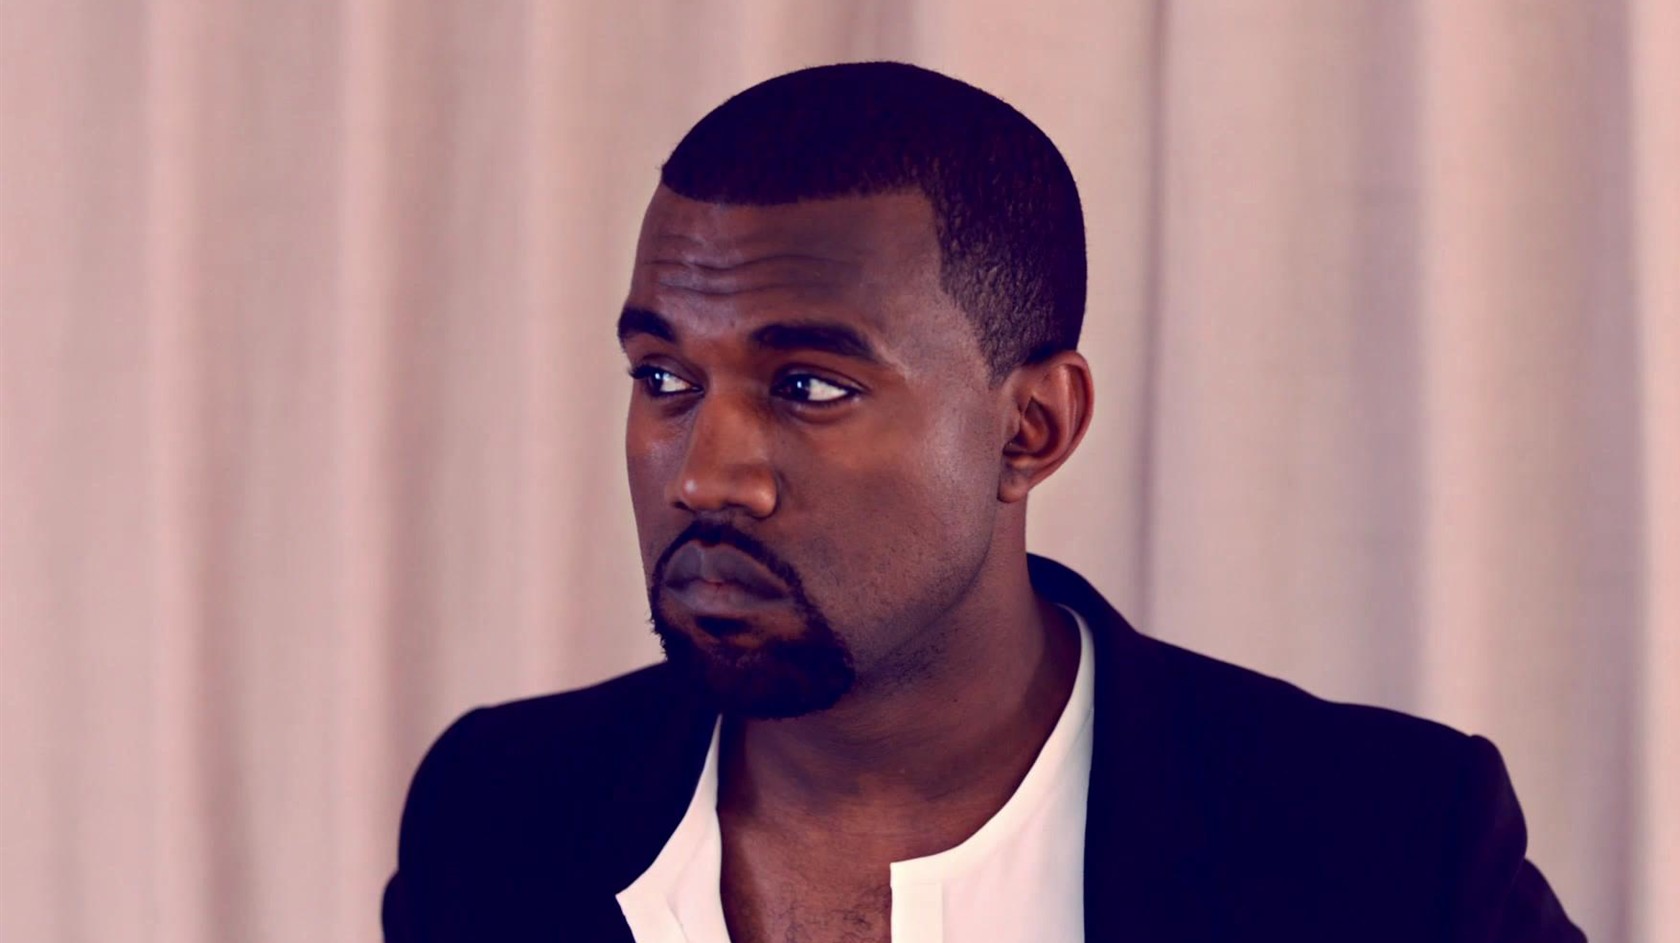 Kanye West saca 2 nuevas canciones a través de Soundcloud 2015